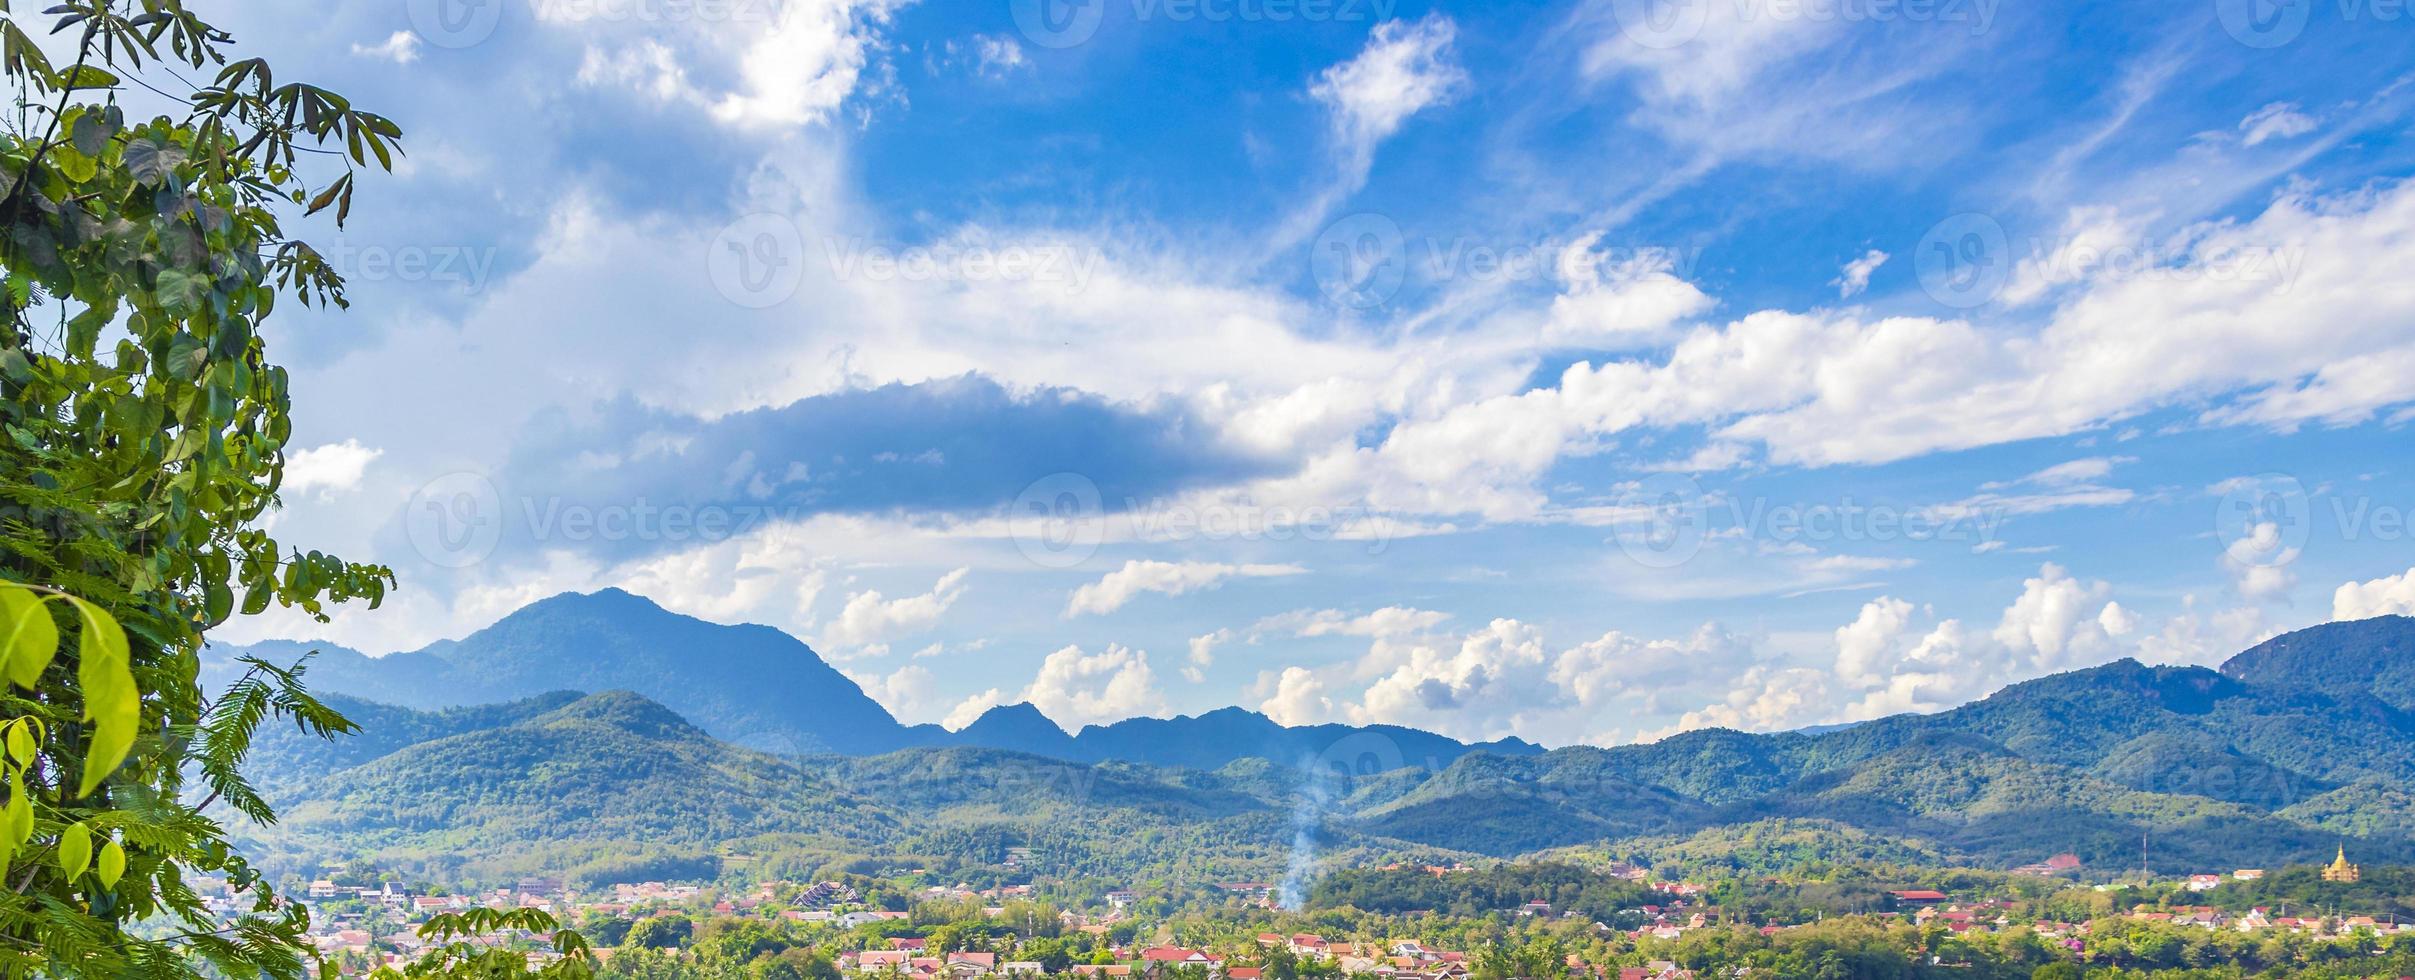 ville de luang prabang au laos paysage panorama avec chaîne de montagnes. photo